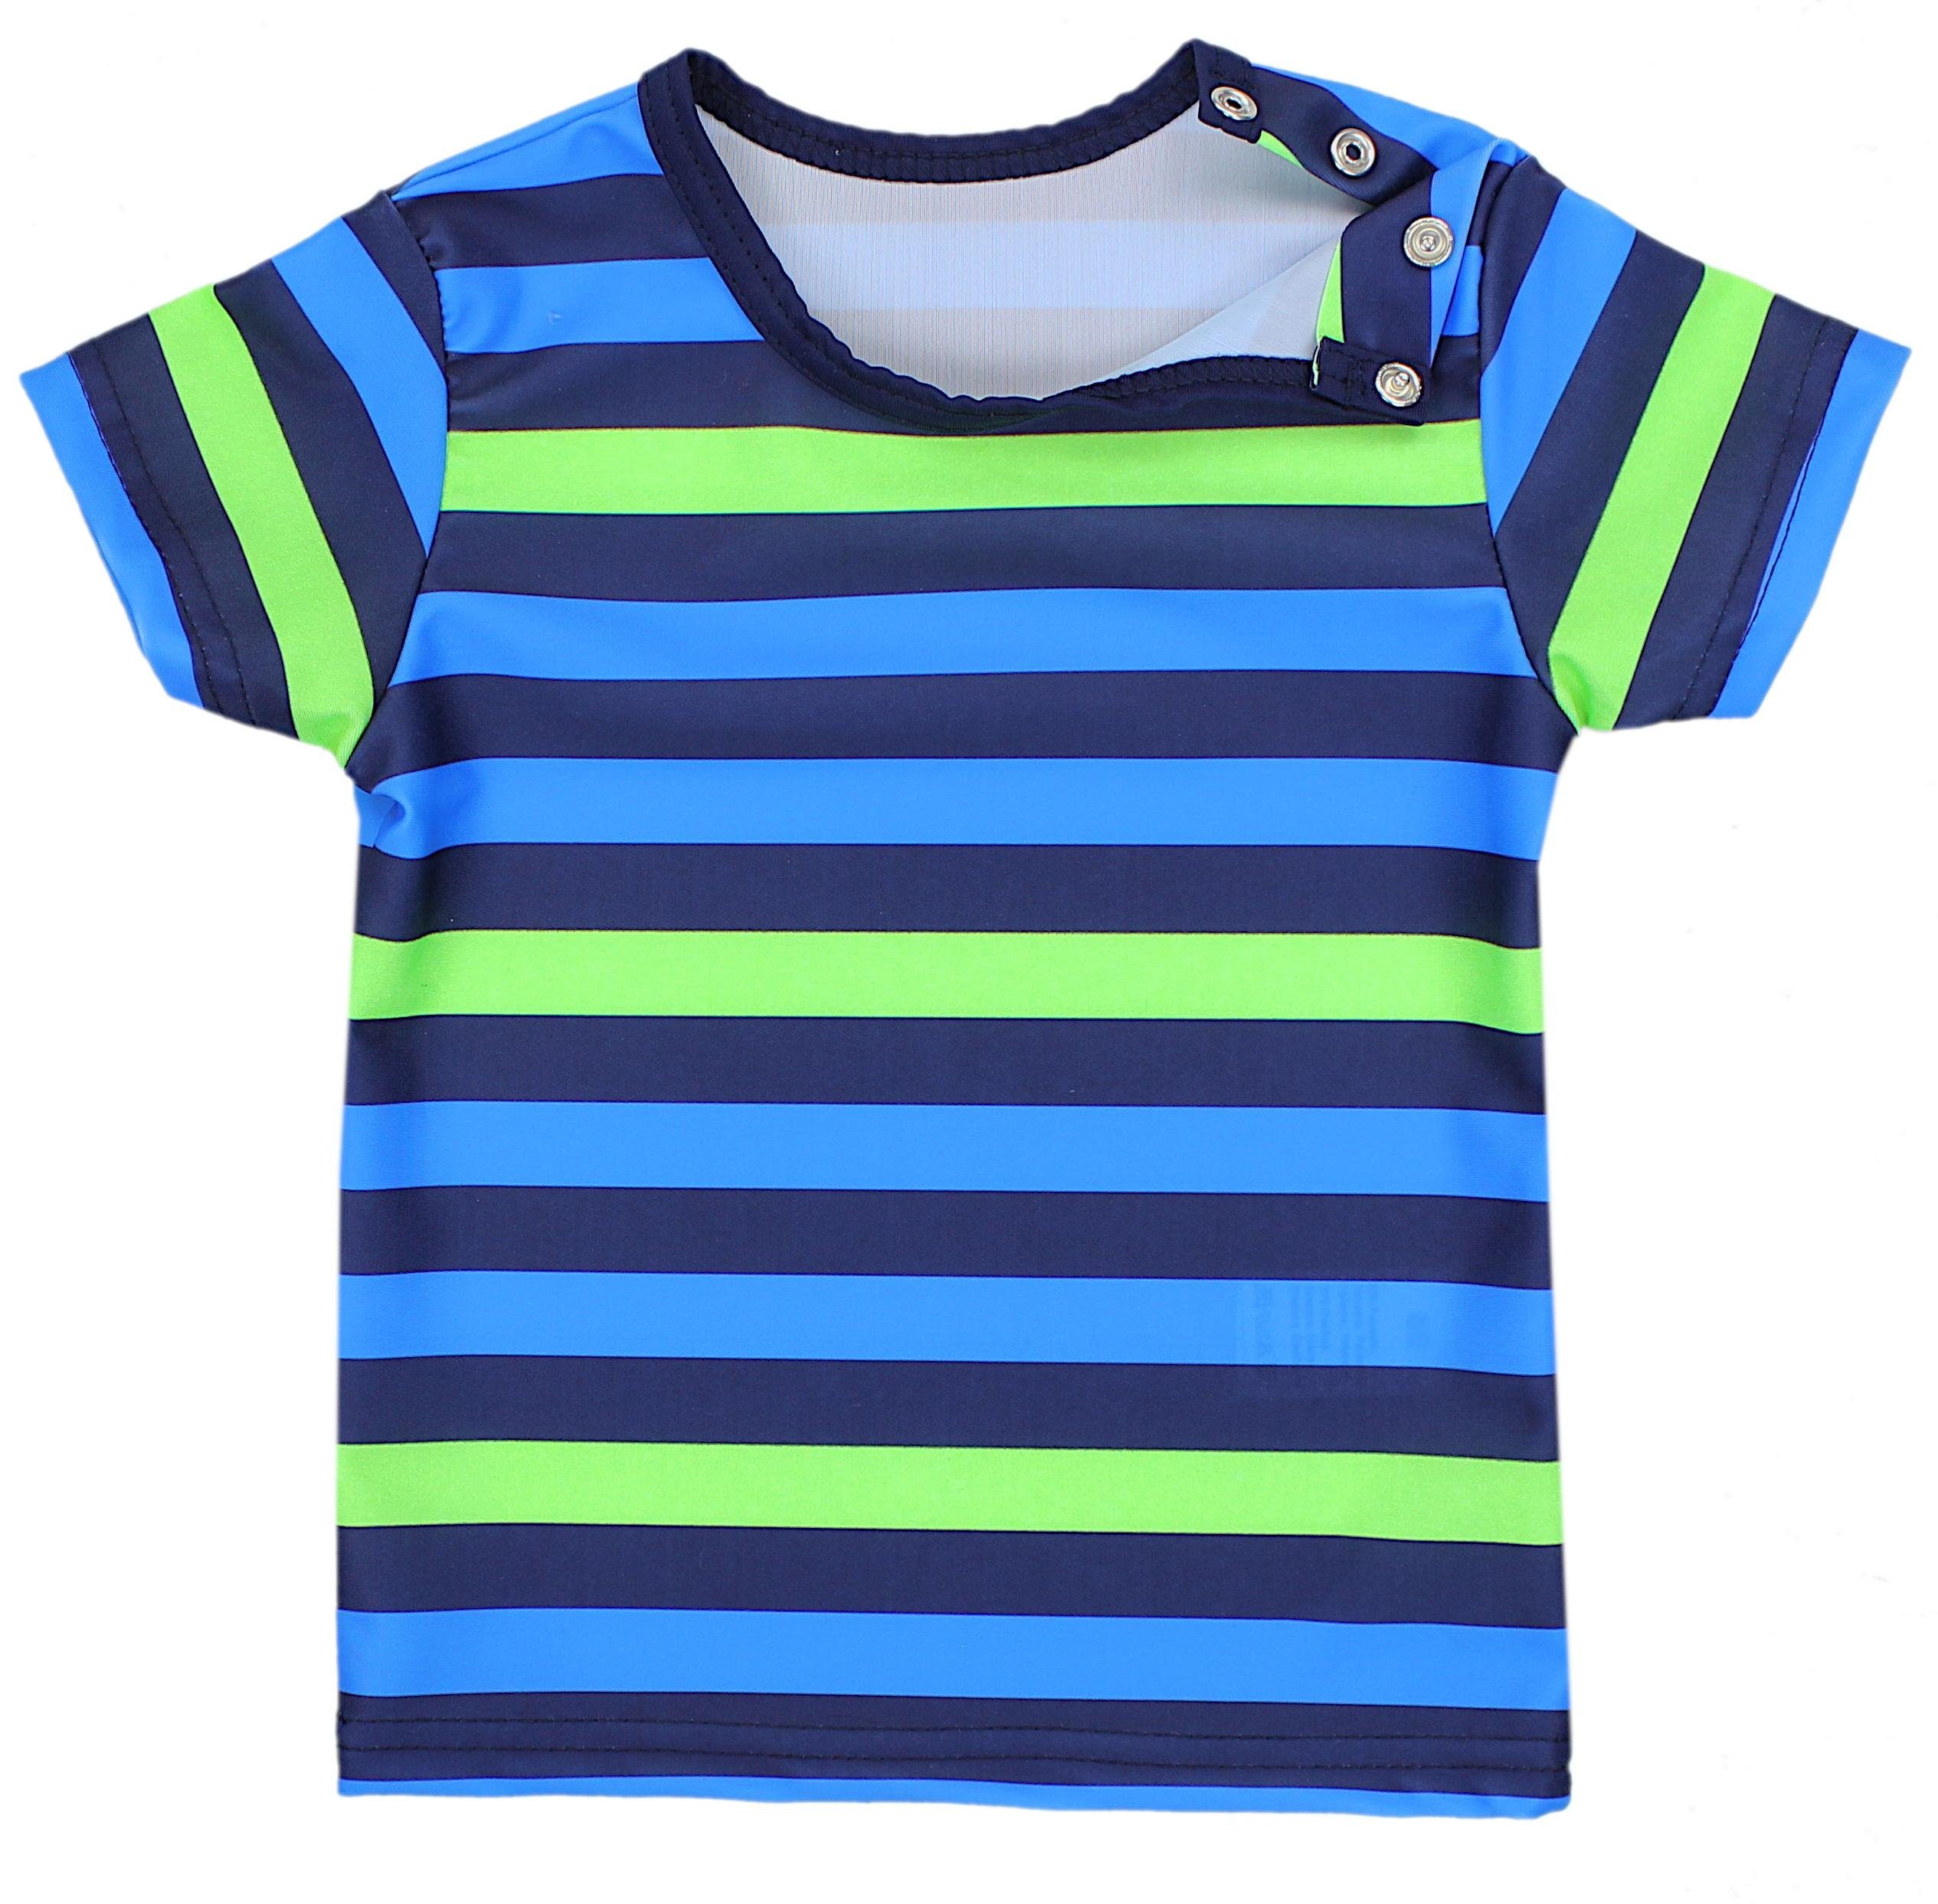 Aquarti Badeanzug UV-Schutz Badehose Streifen Badeanzug / Blau Dunkelblau / Grün Zweiteiliger Baby Kinder Jungen T-Shirt